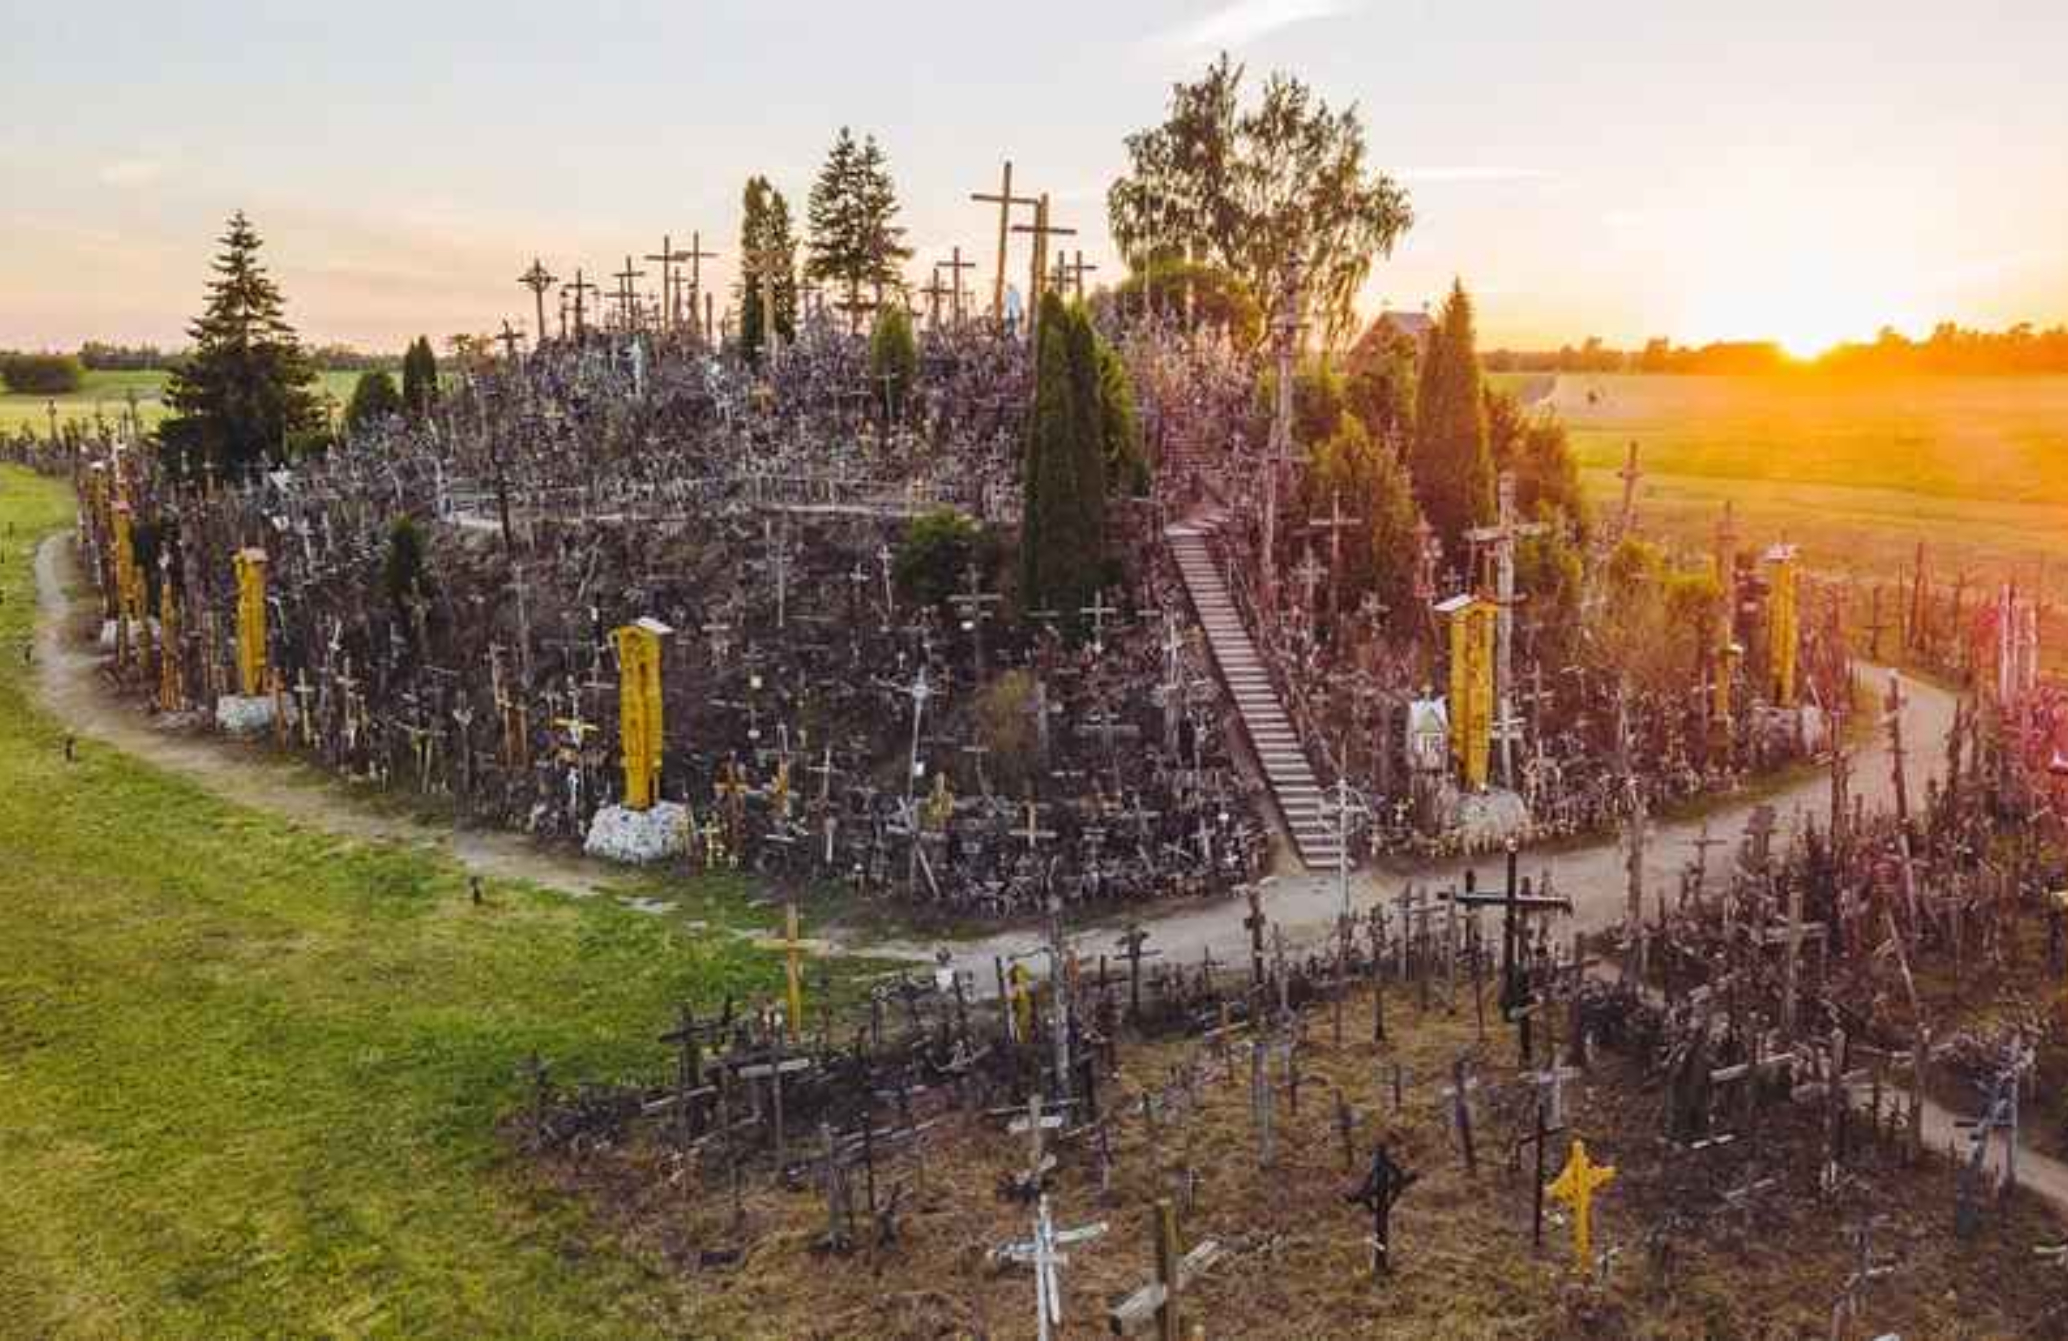 Ο λόφος των Σταυρών: Το ιερό σημείο προσκυνήματος στη Λιθουανία με τους 100.000 σταυρούς